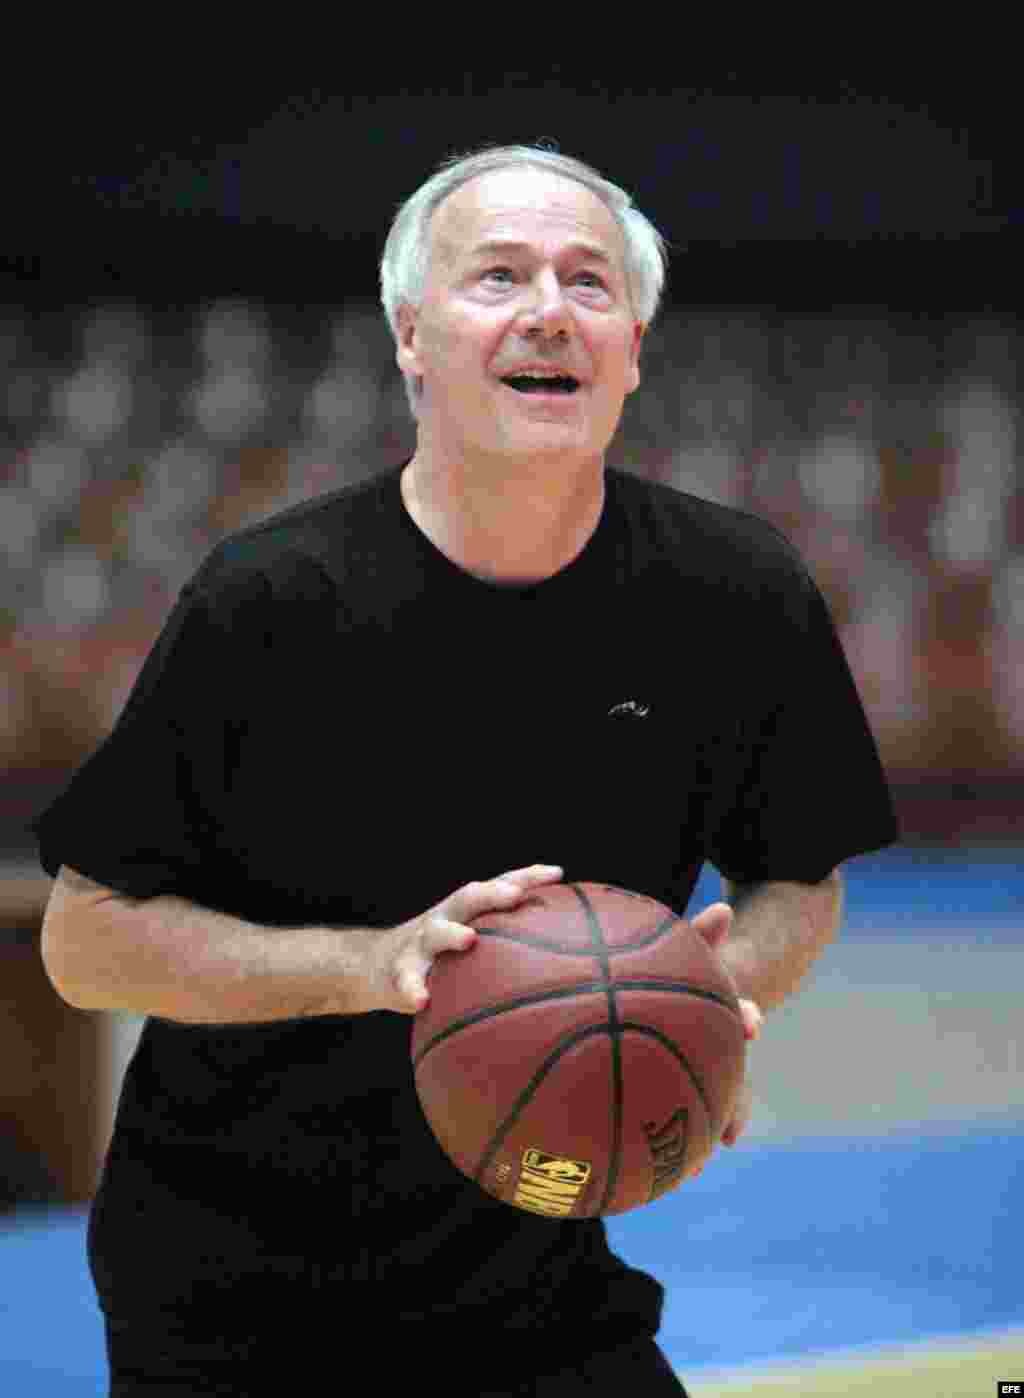  El gobernador de Arkansas, Asa Hutchinson, participa en un juego de Baloncesto en La Habana. EFE